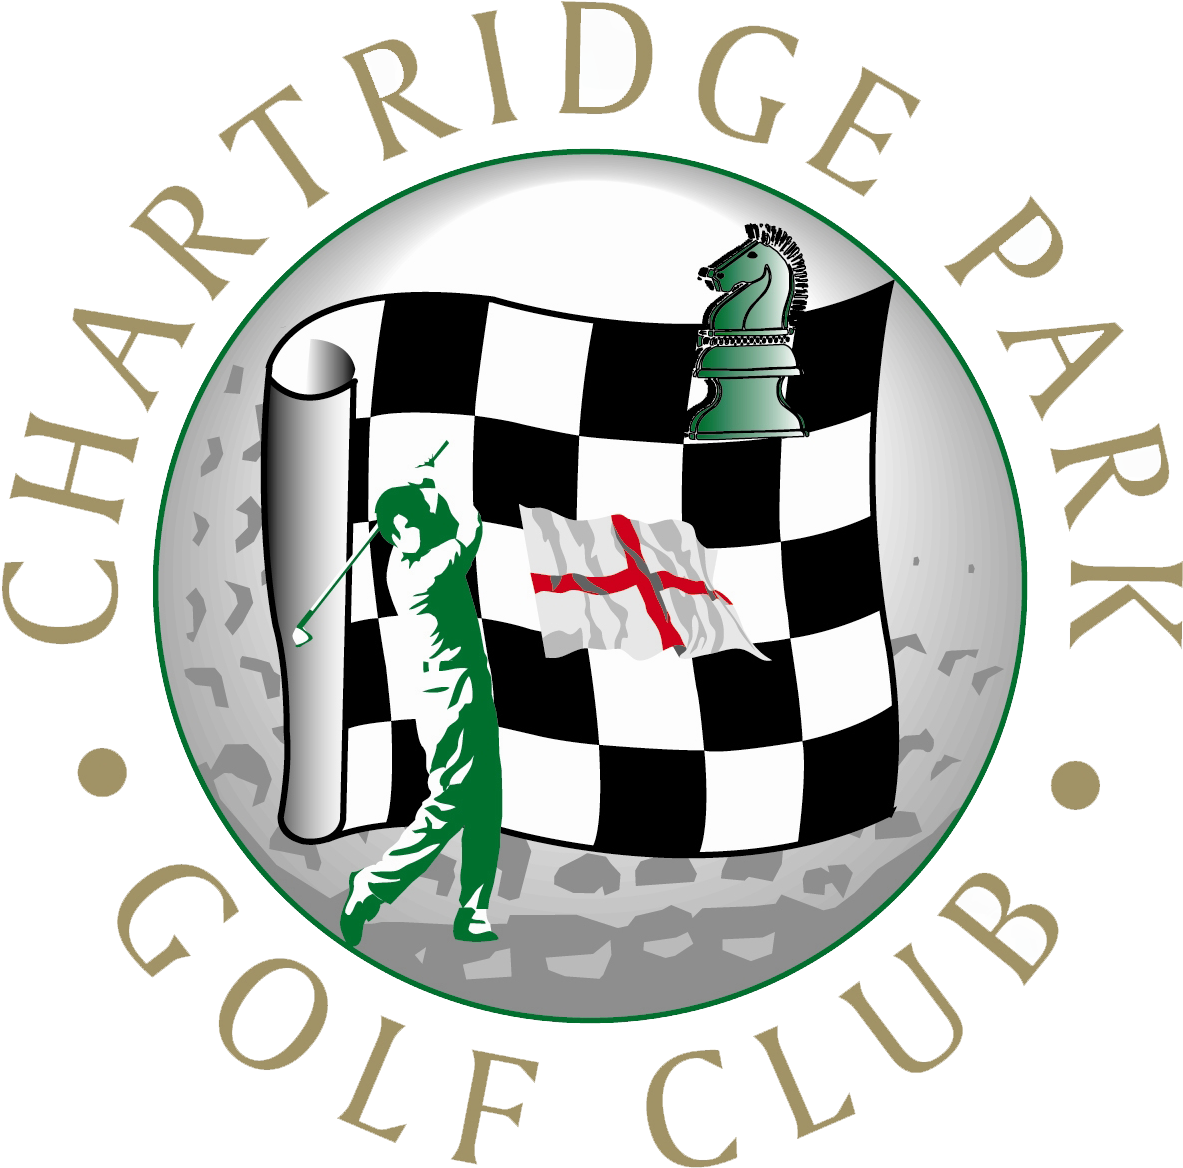 Chartridge Park Golf Club - Chartridge Park Golf Club Logo (1299x1299), Png Download